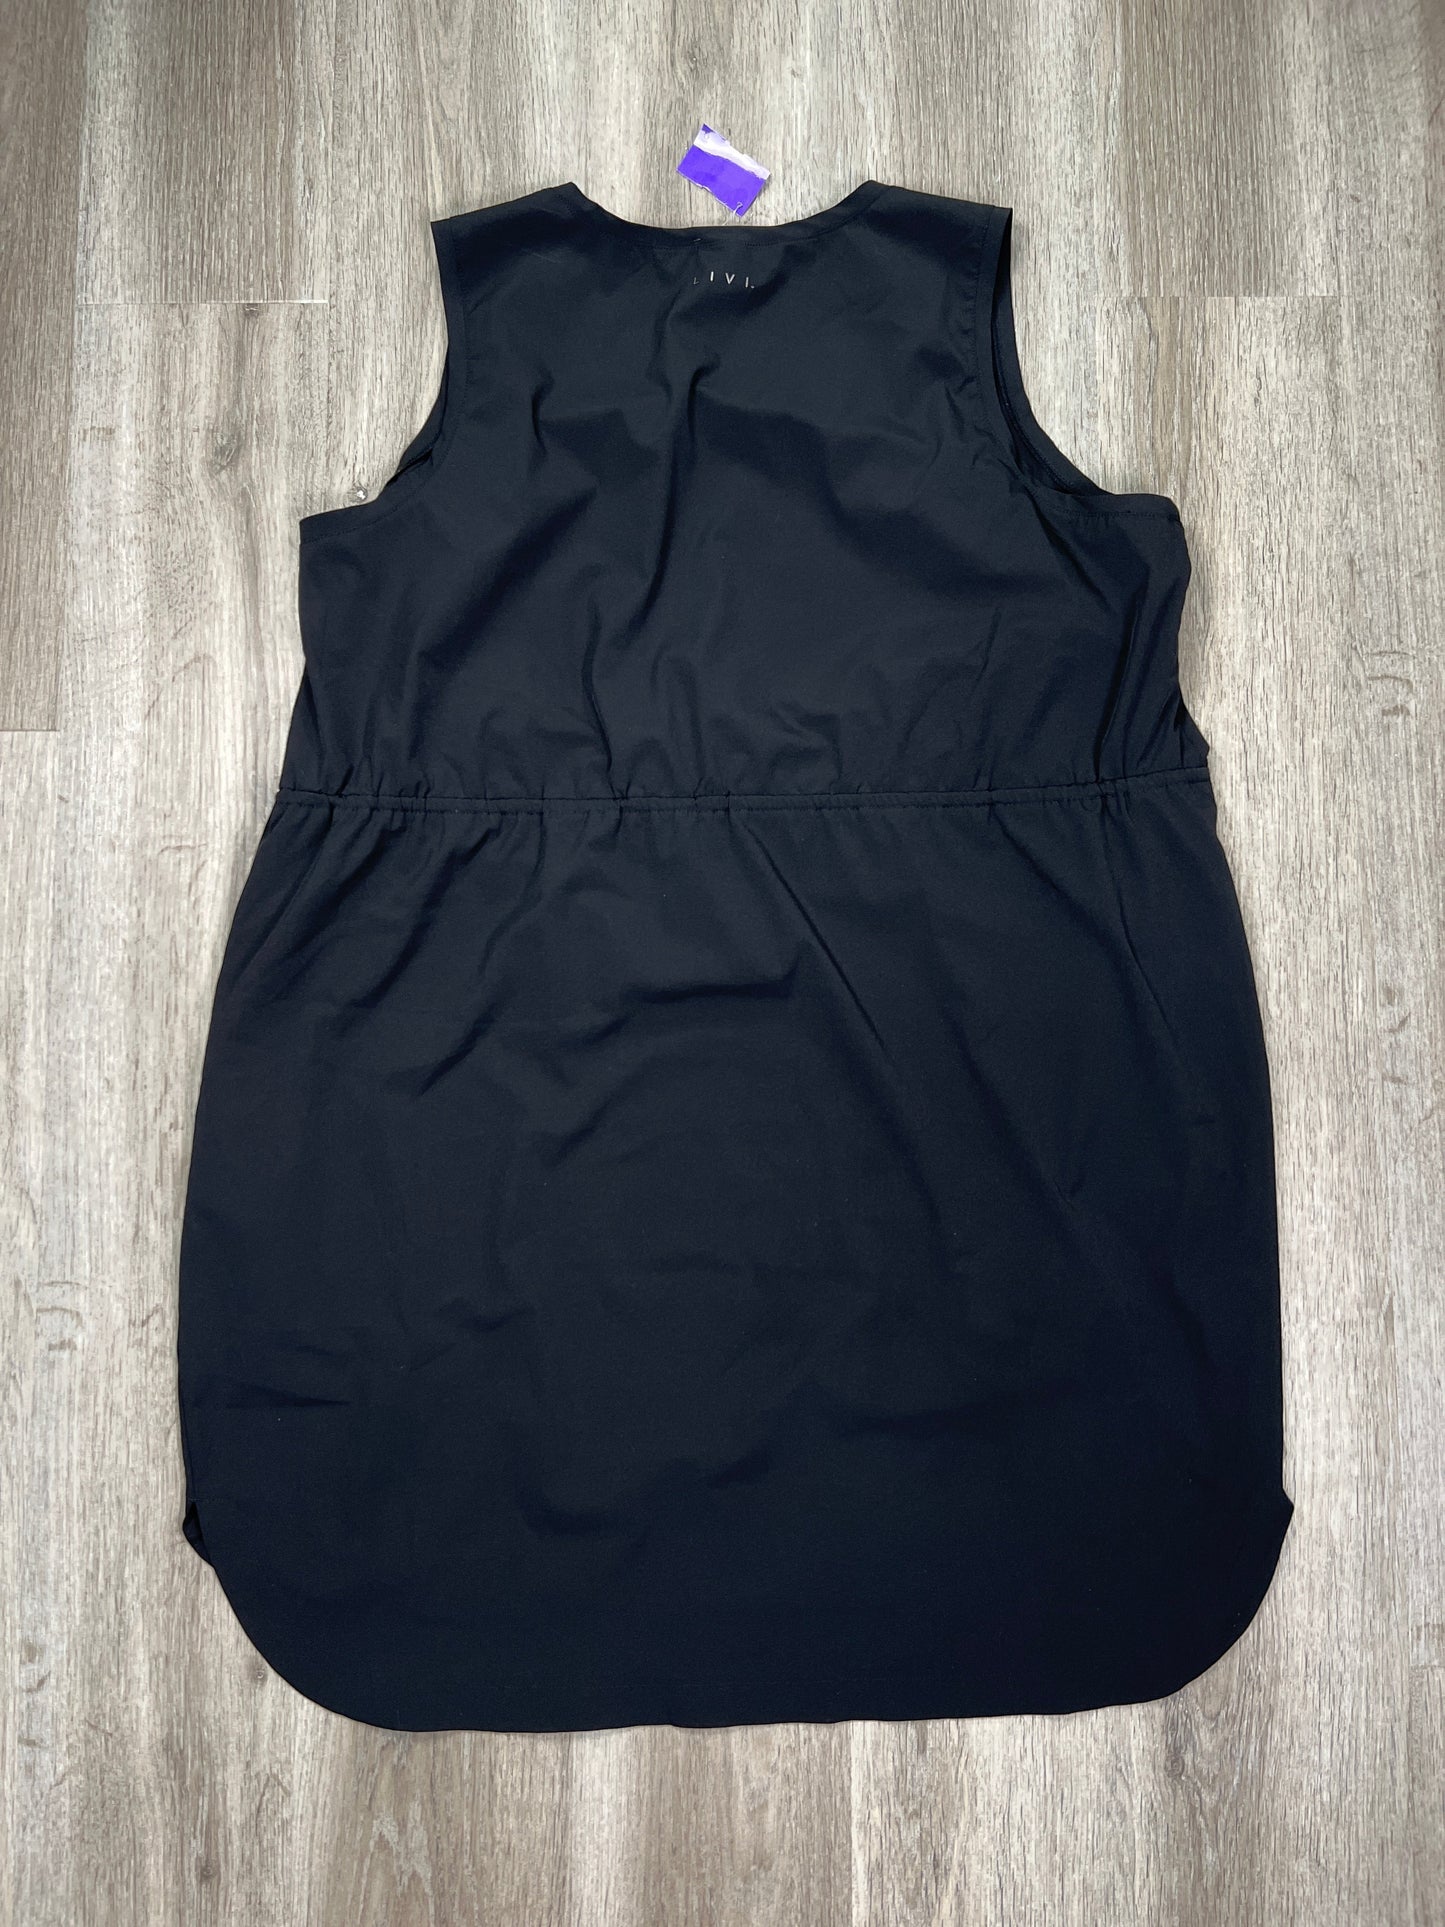 Black Athletic Dress Livi Active, Size 1x